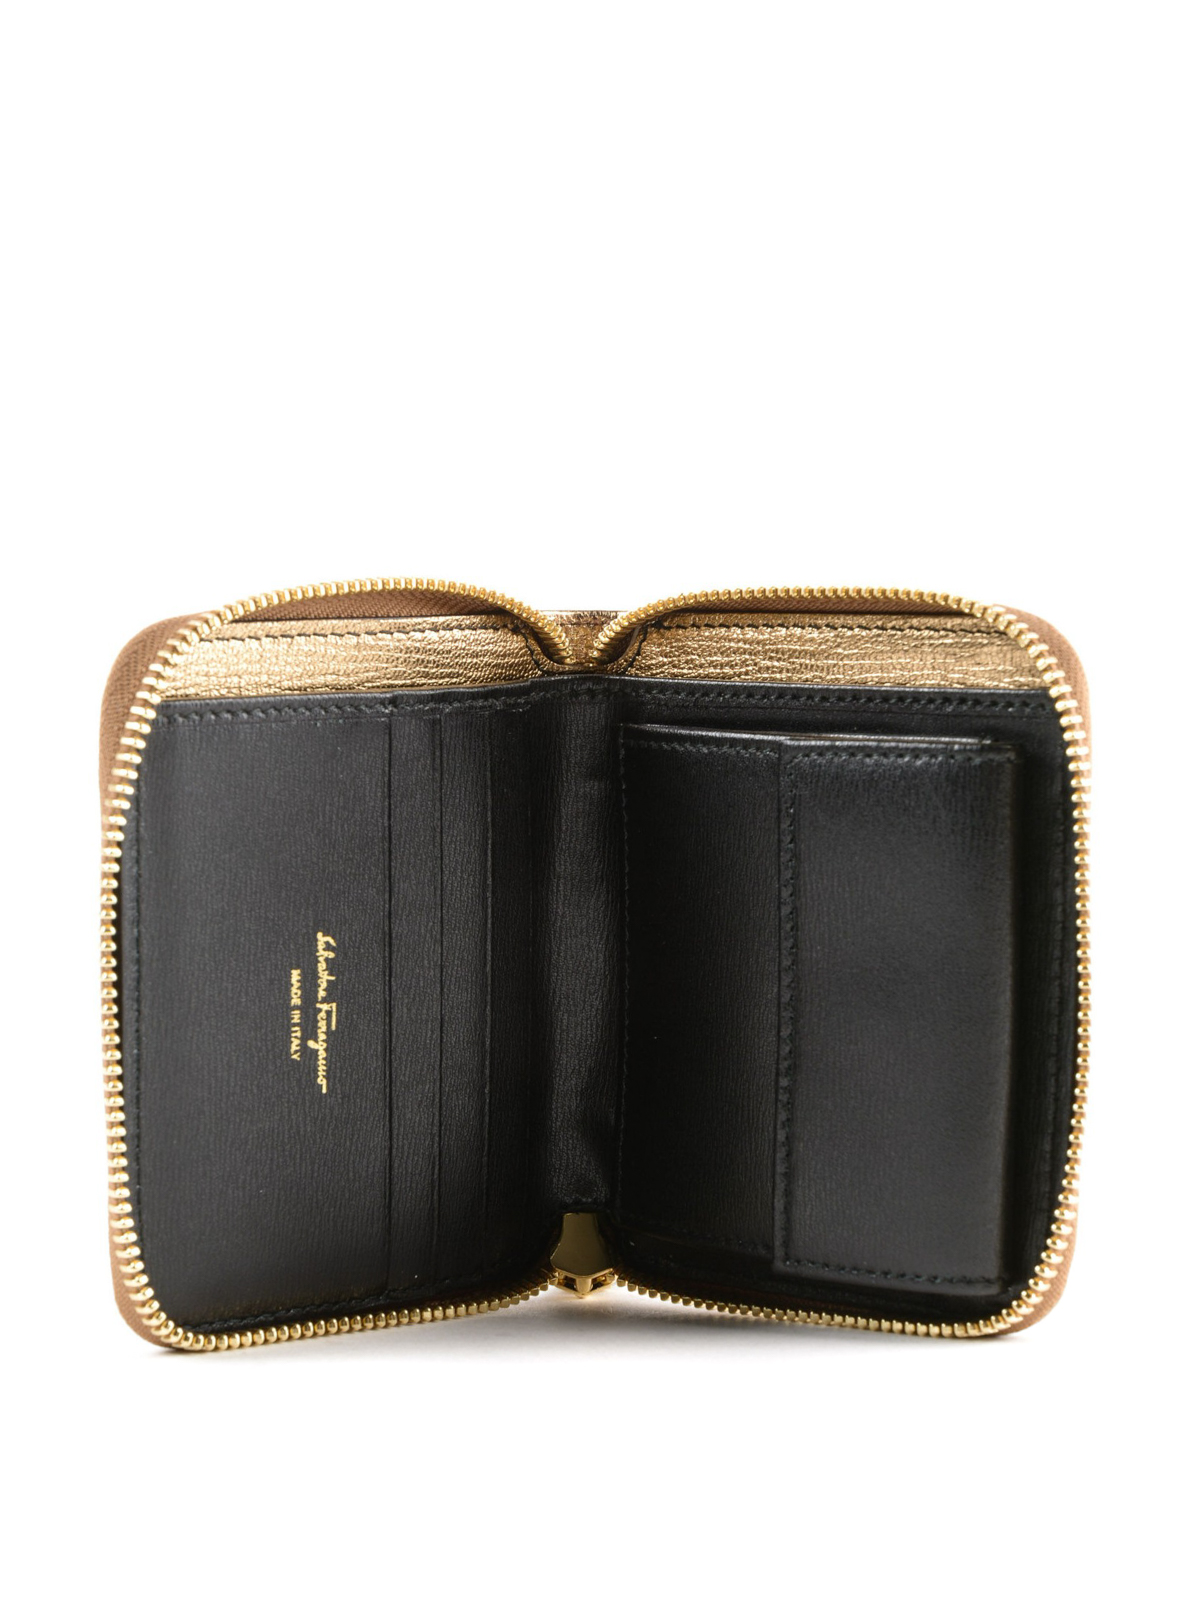 Wallets & purses Salvatore Ferragamo - Gancini gold small wallet ...